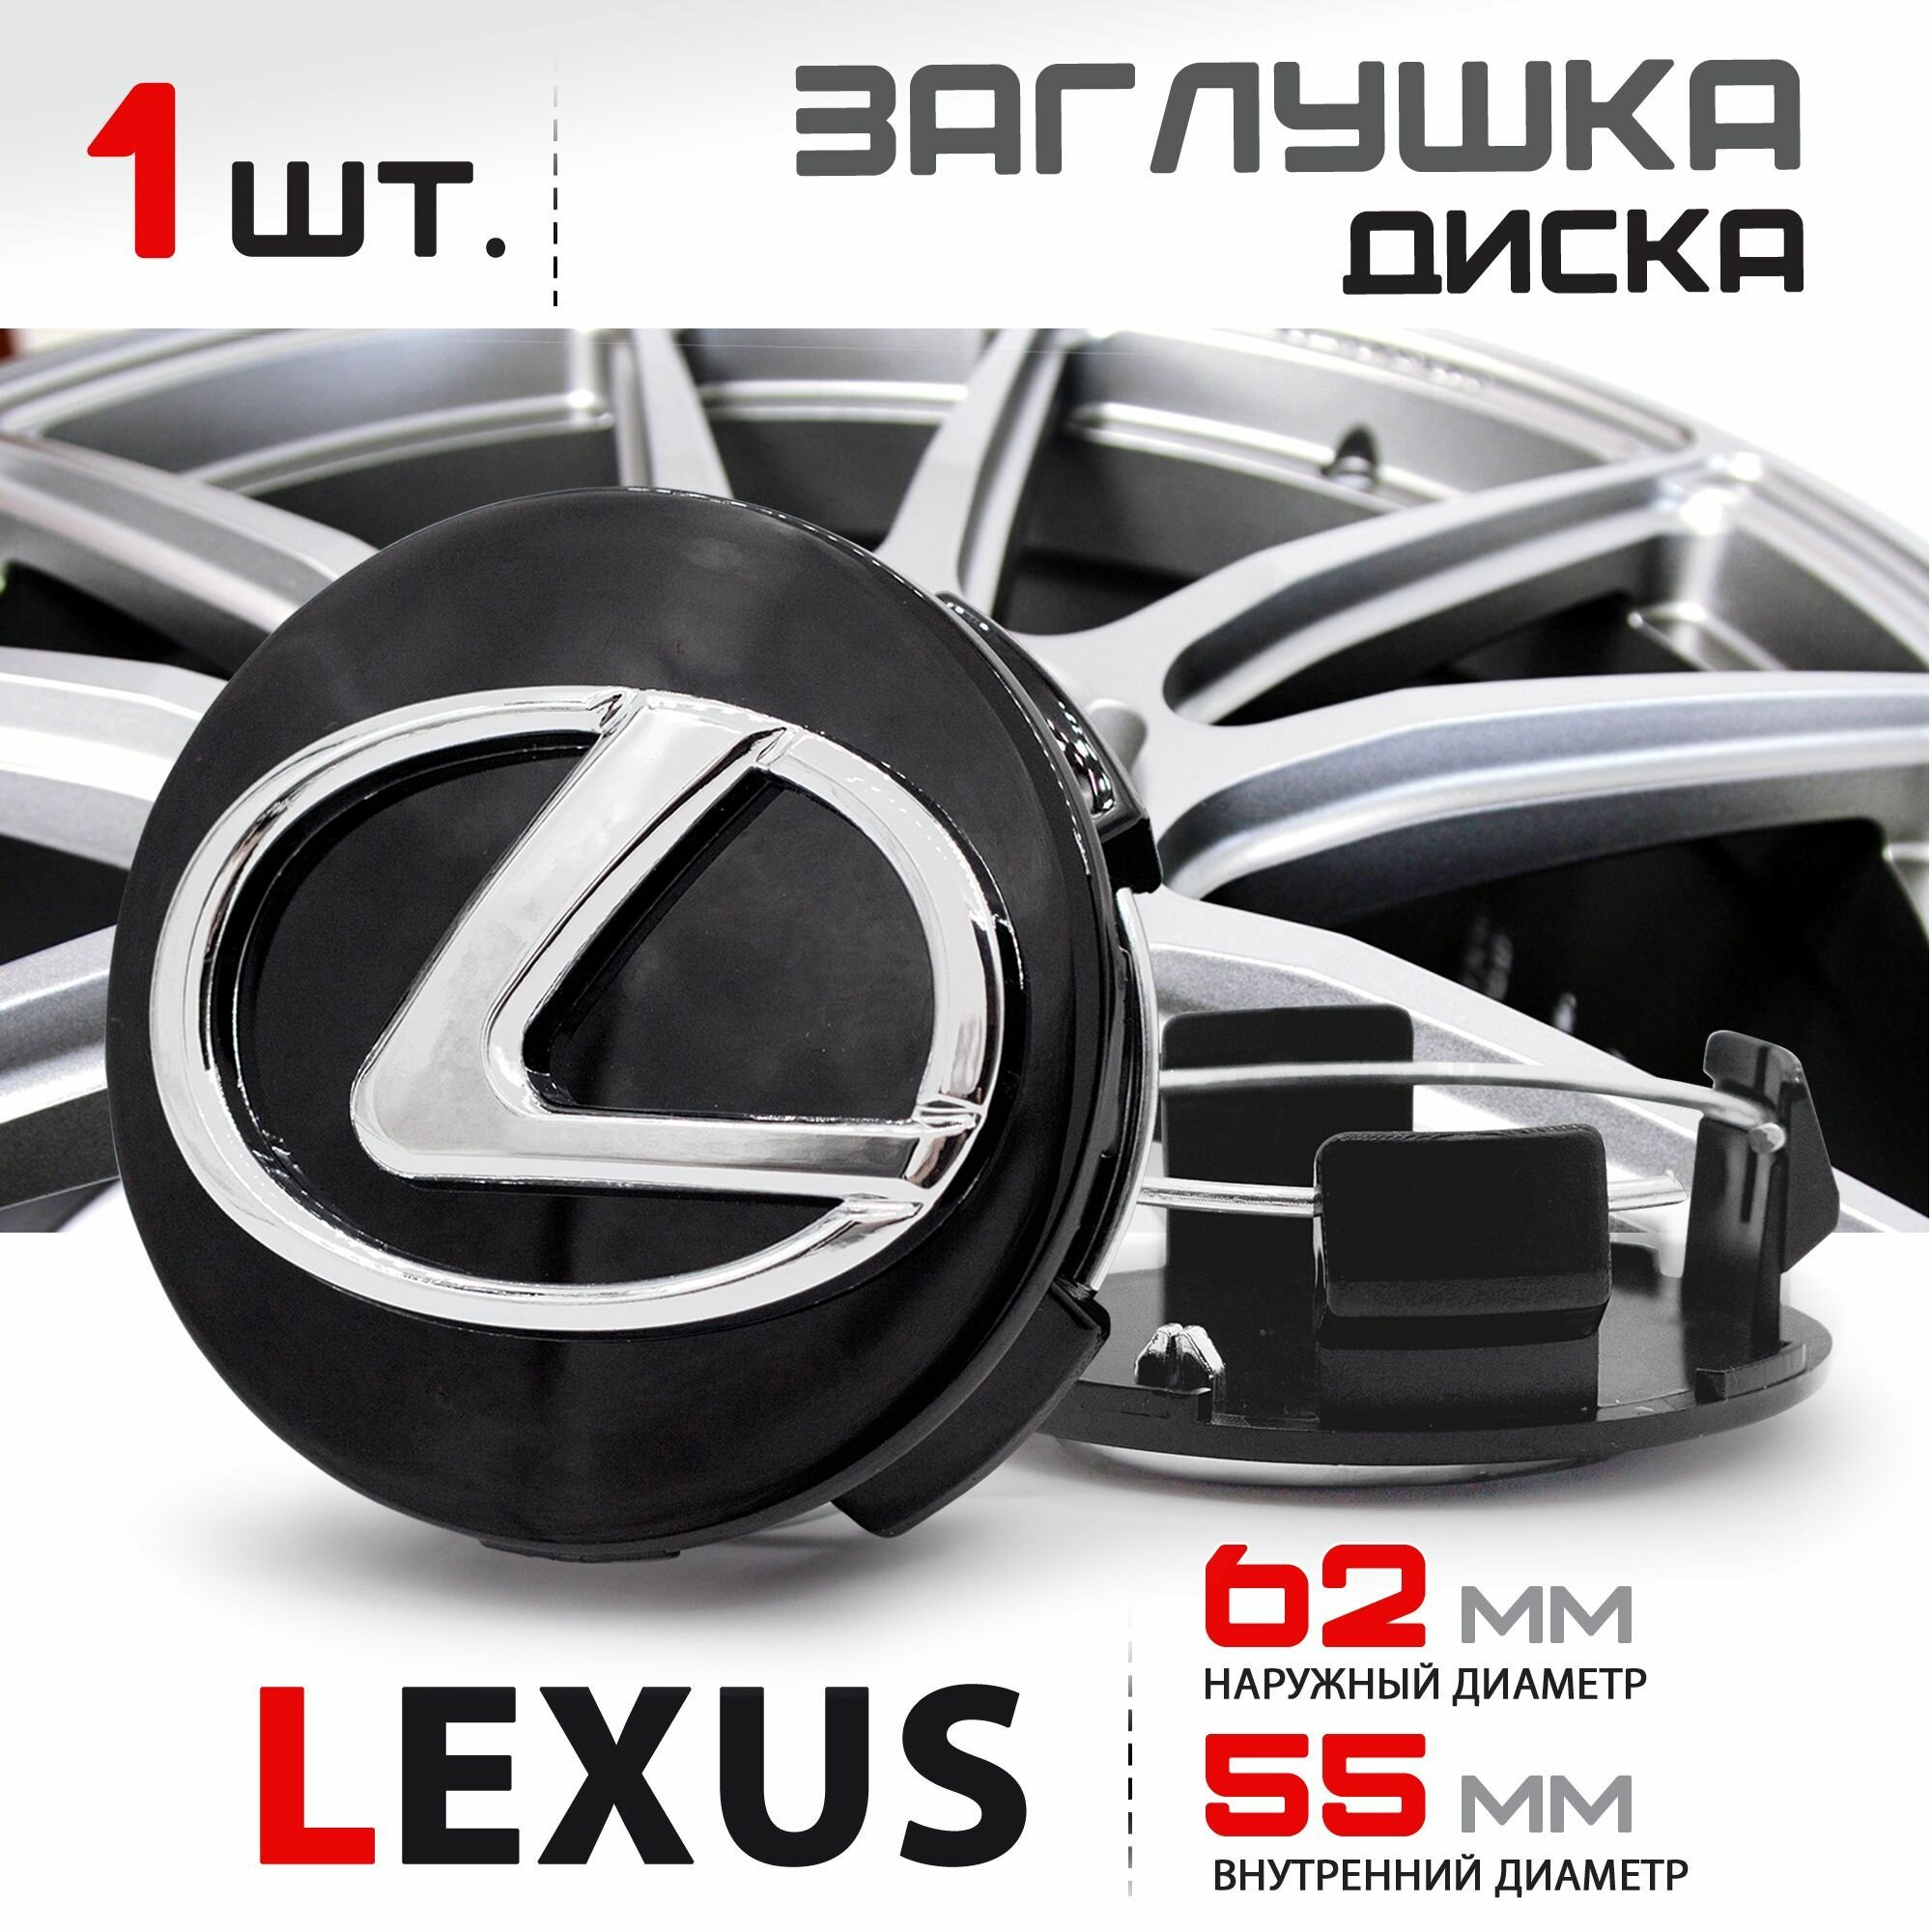 Колпачок, заглушка на литой диск колеса для Lexus / Лексус 62 мм - 1 штука, черный